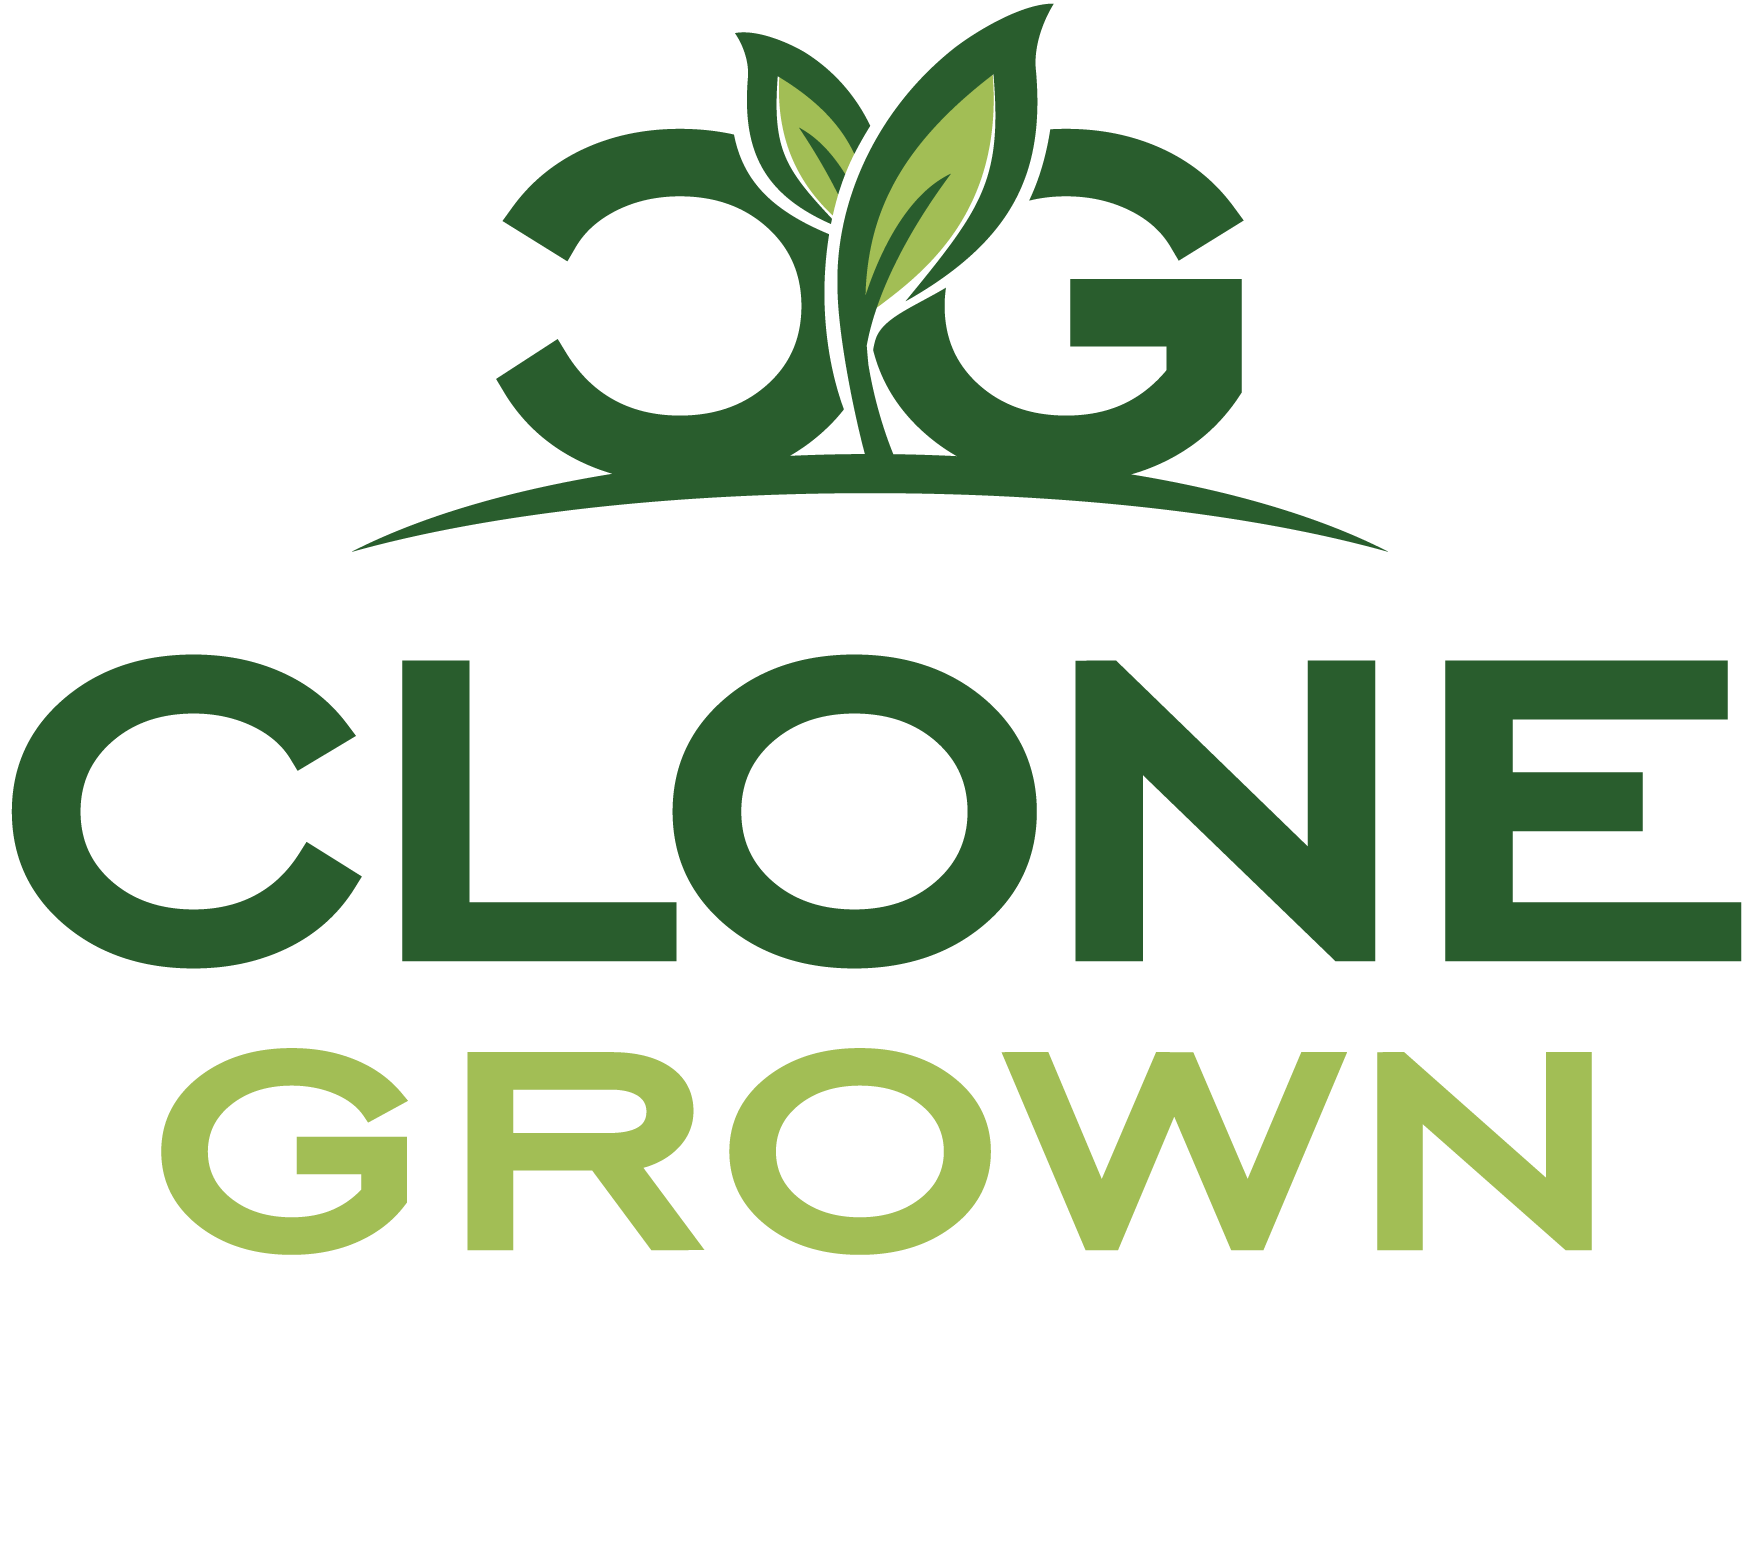 Clone Grown logo